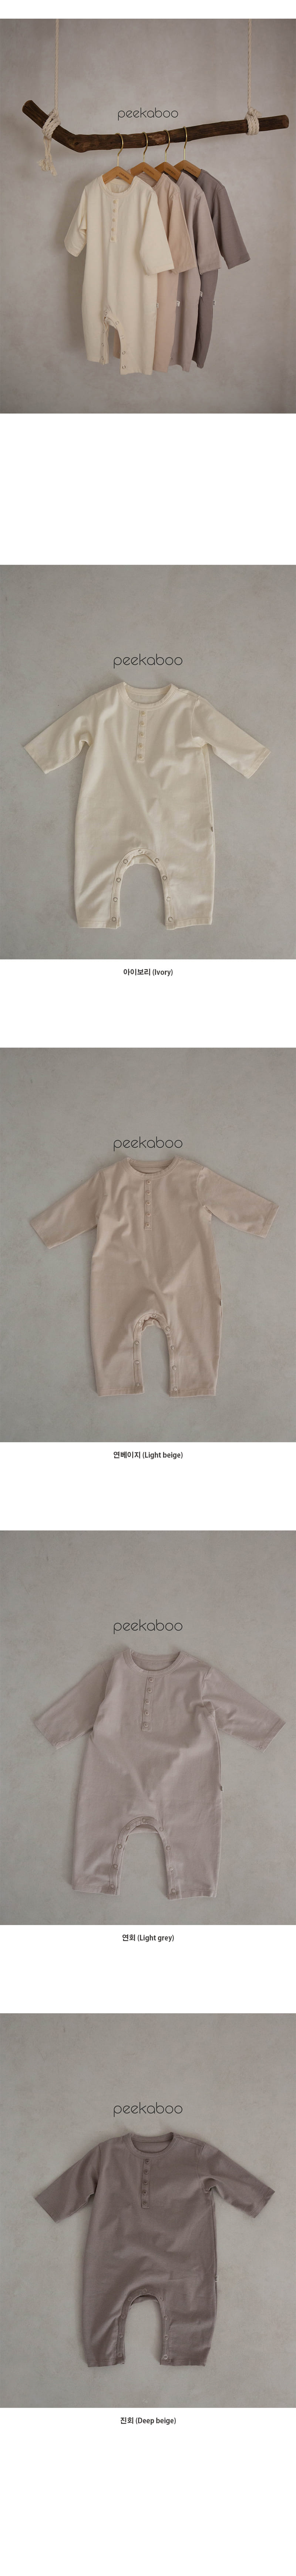 Peekaboo - Korean Baby Fashion - #babyboutiqueclothing - Peter Bodysuit - 4